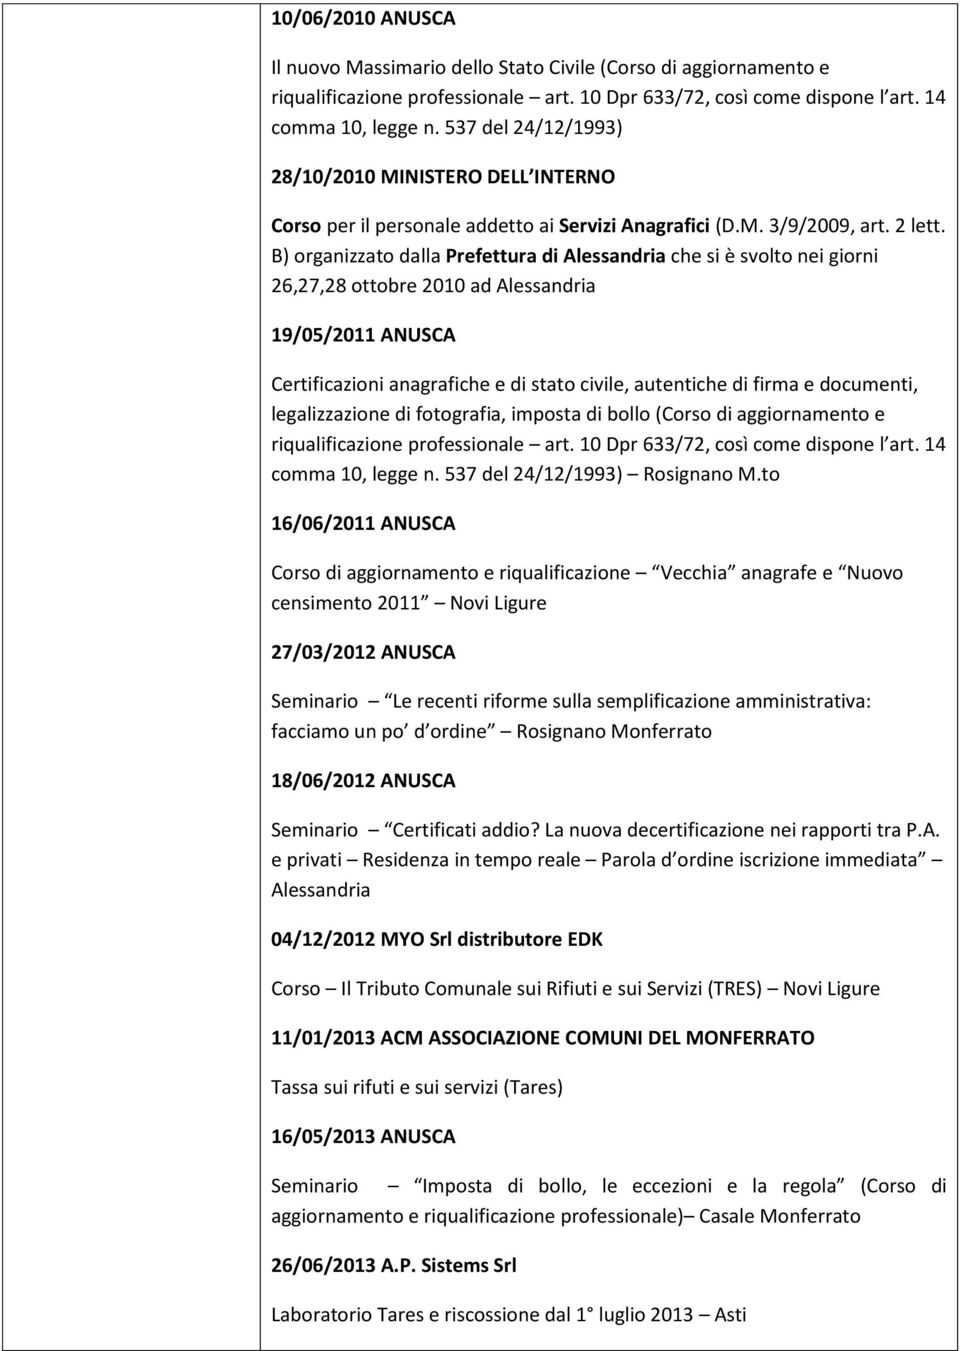 B) organizzato dalla Prefettura di Alessandria che si è svolto nei giorni 26,27,28 ottobre 2010 ad Alessandria 19/05/2011 ANUSCA Certificazioni anagrafiche e di stato civile, autentiche di firma e